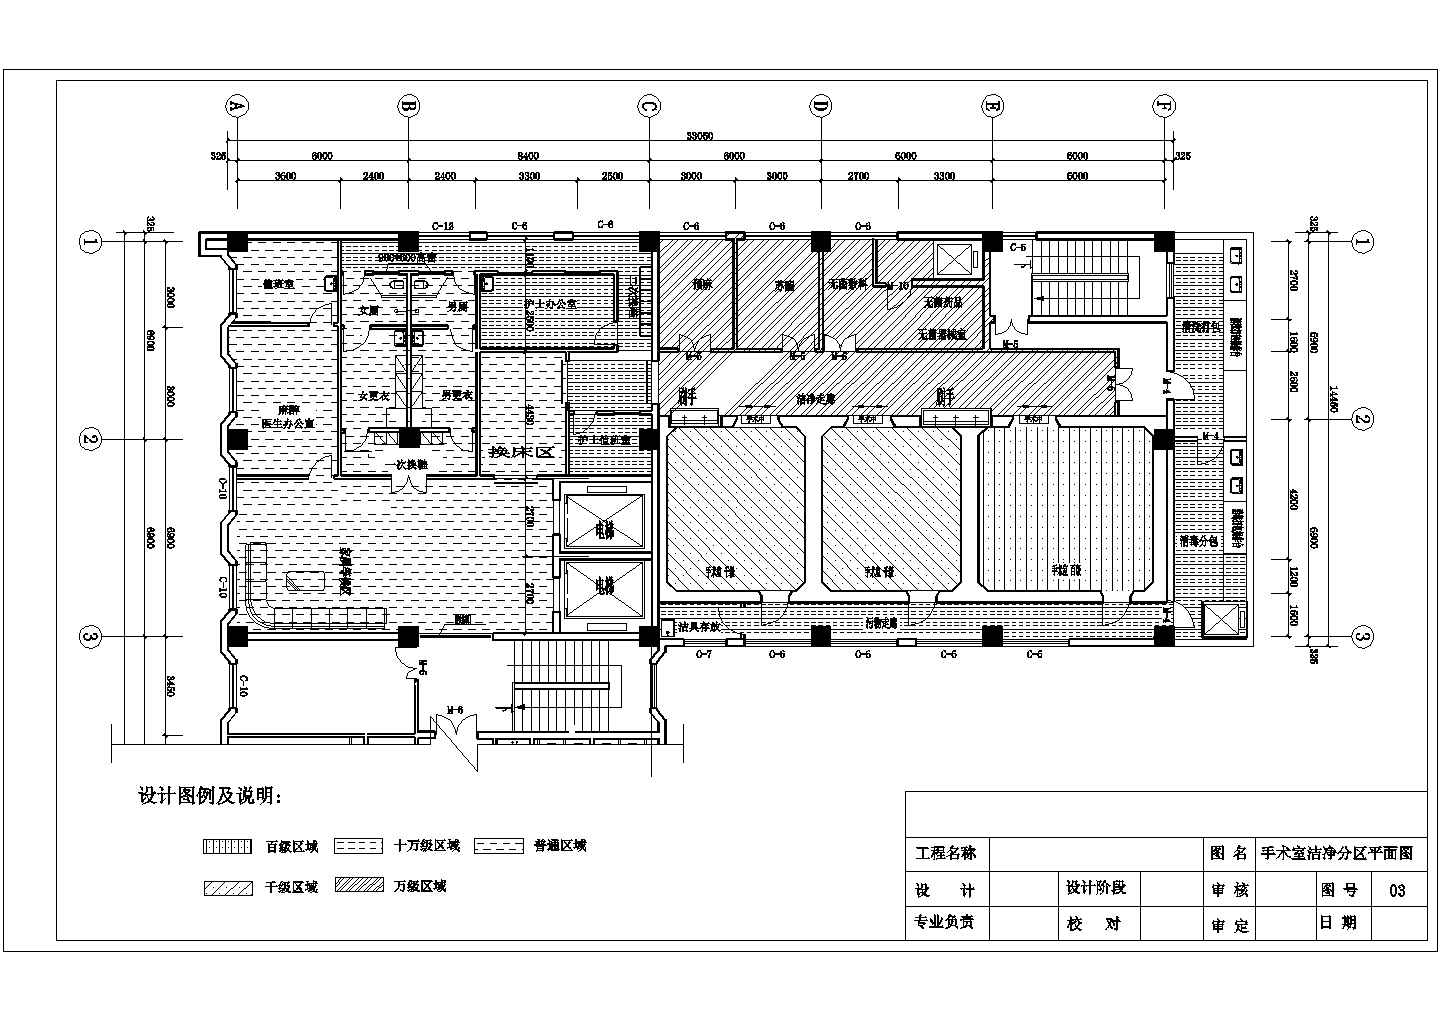 银川市某医院手术室建筑设计施工图